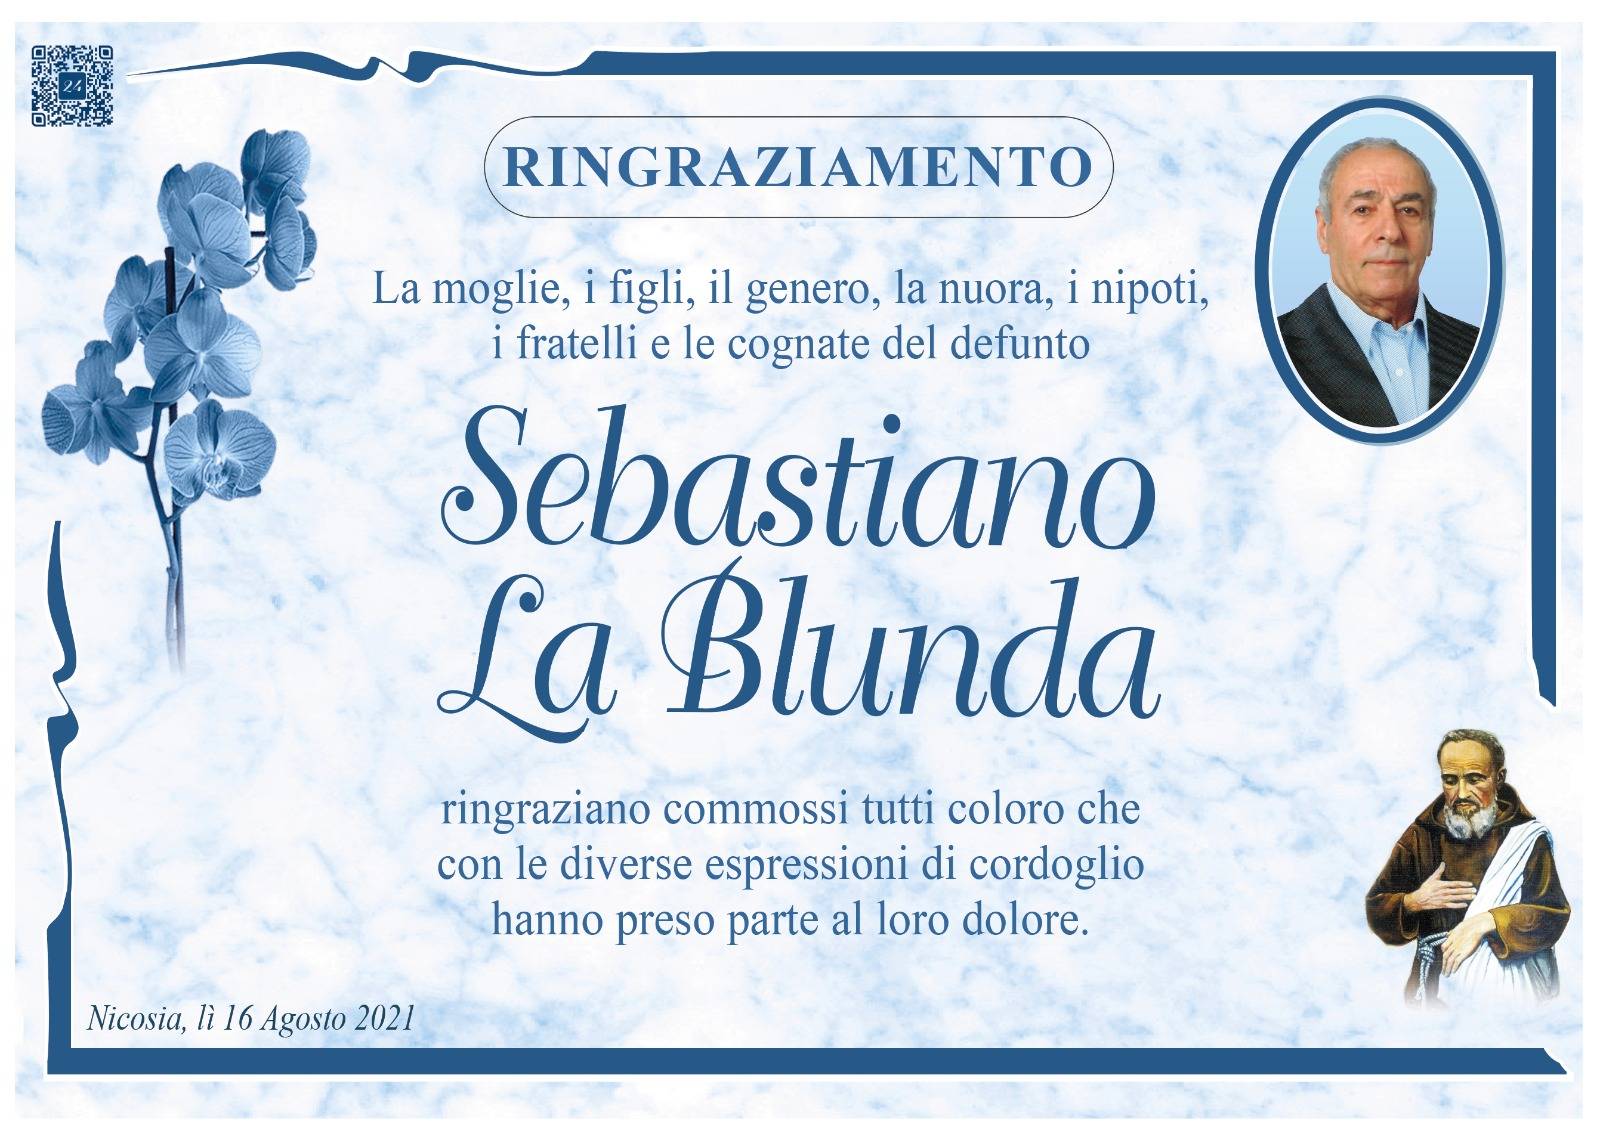 Sebastiano La Blunda